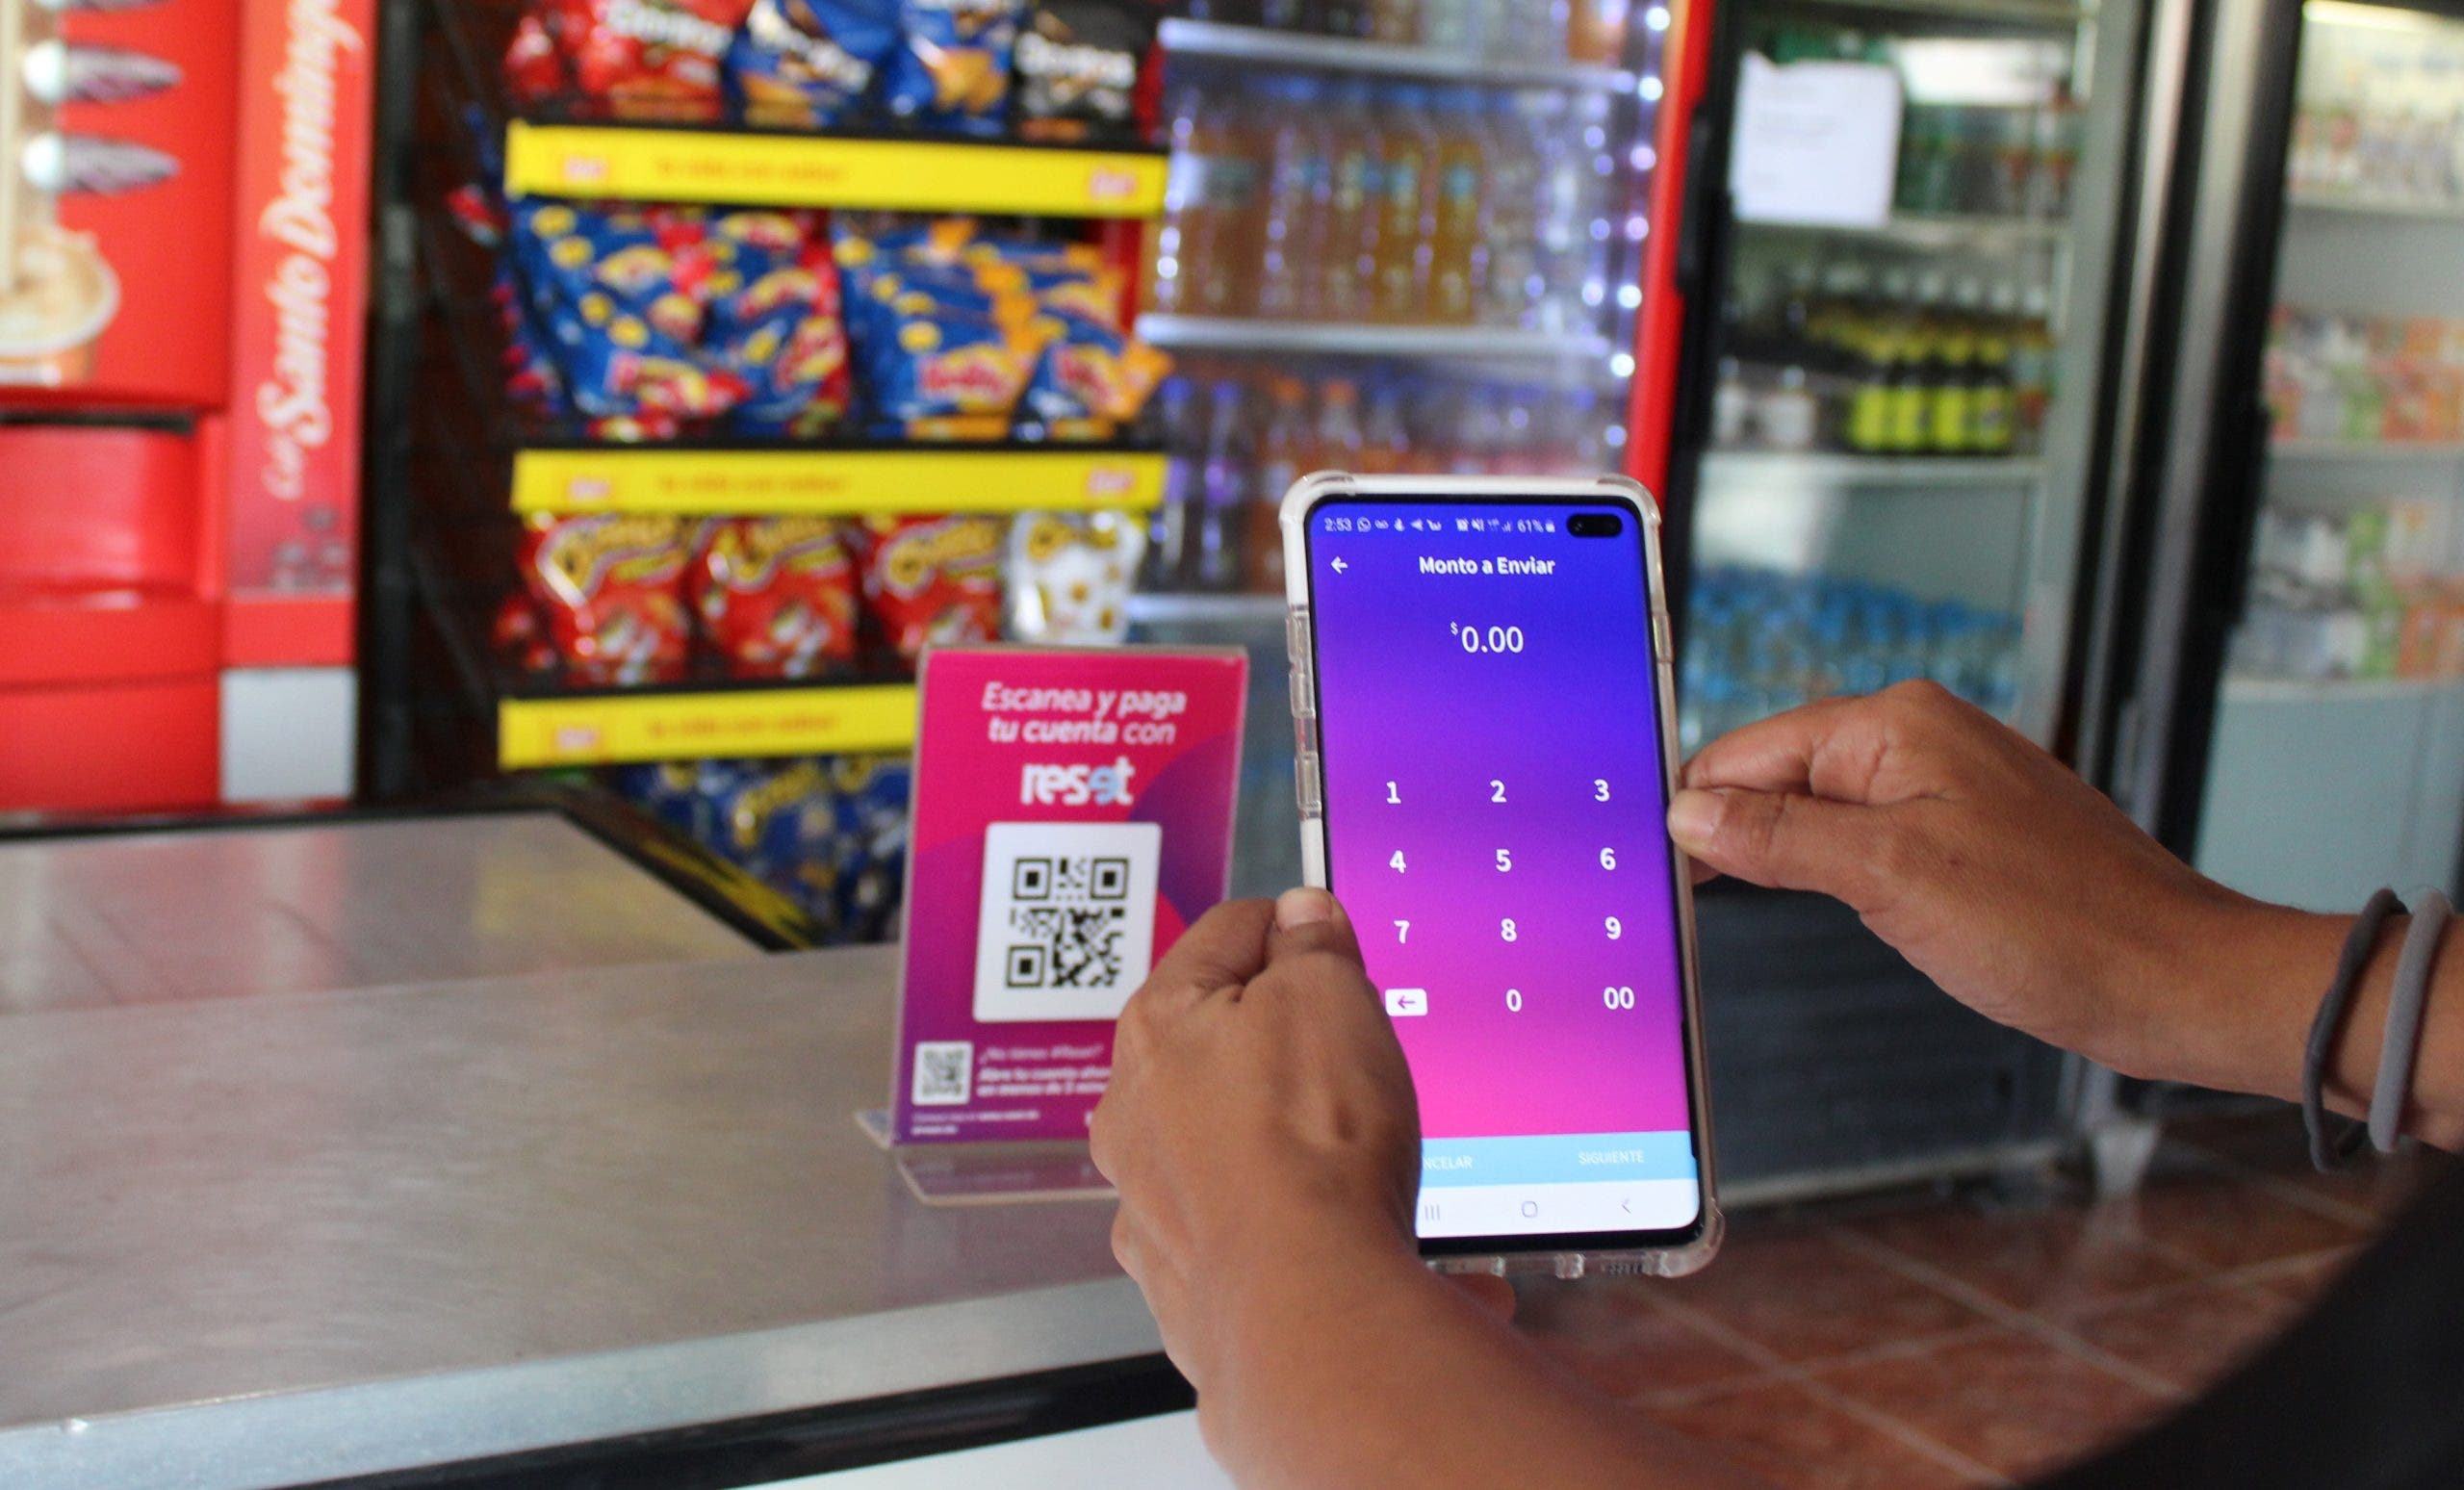 Fihogar lanza la primera cuenta bancaria 100% digital